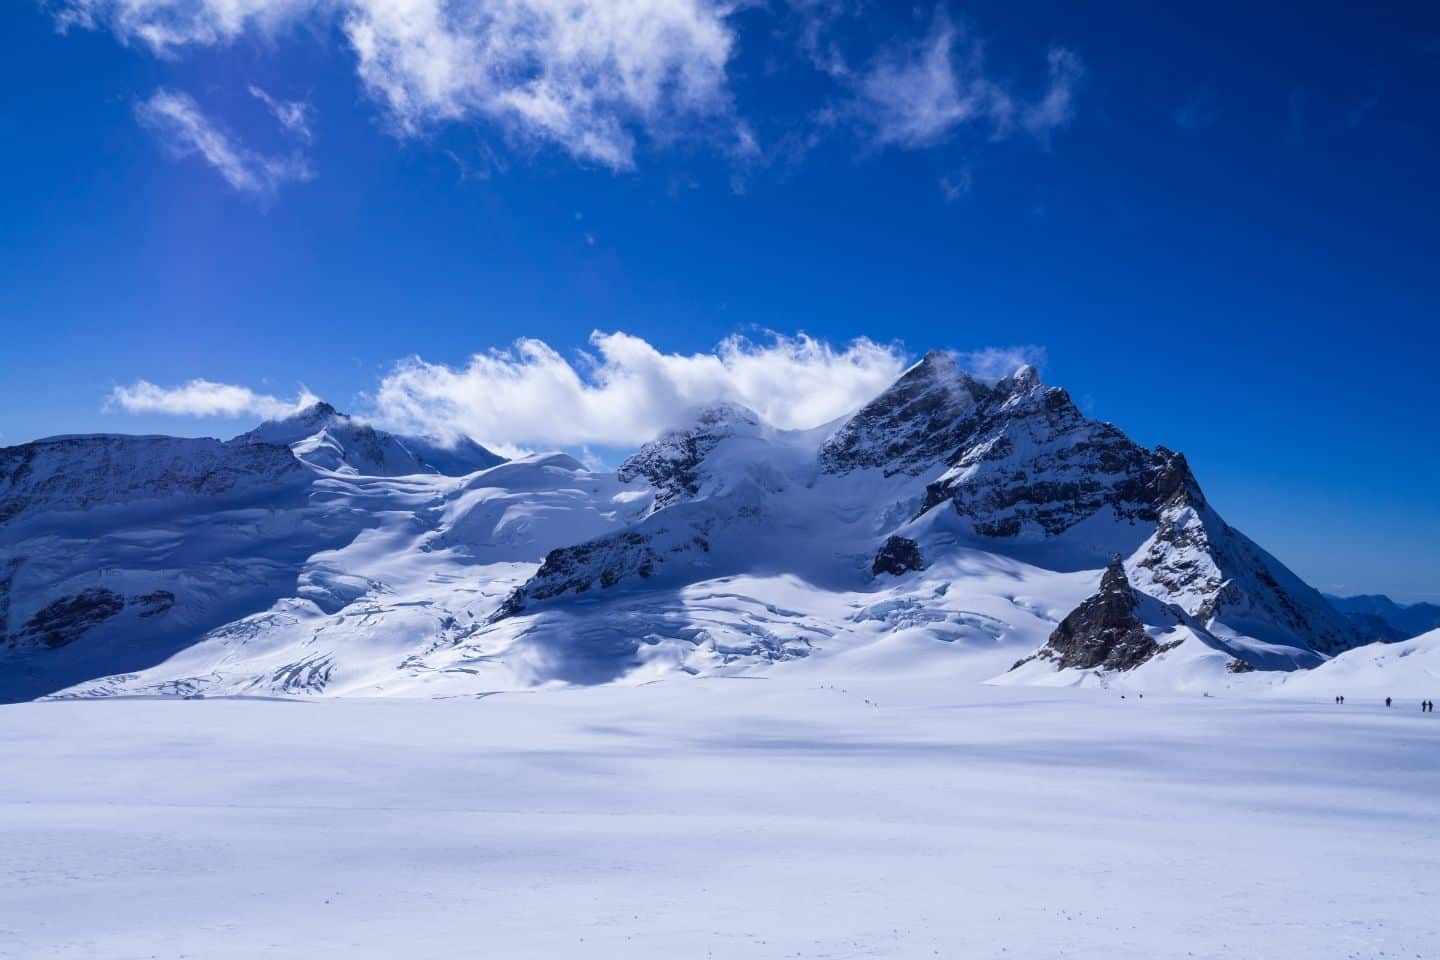 Jungfrau mountain